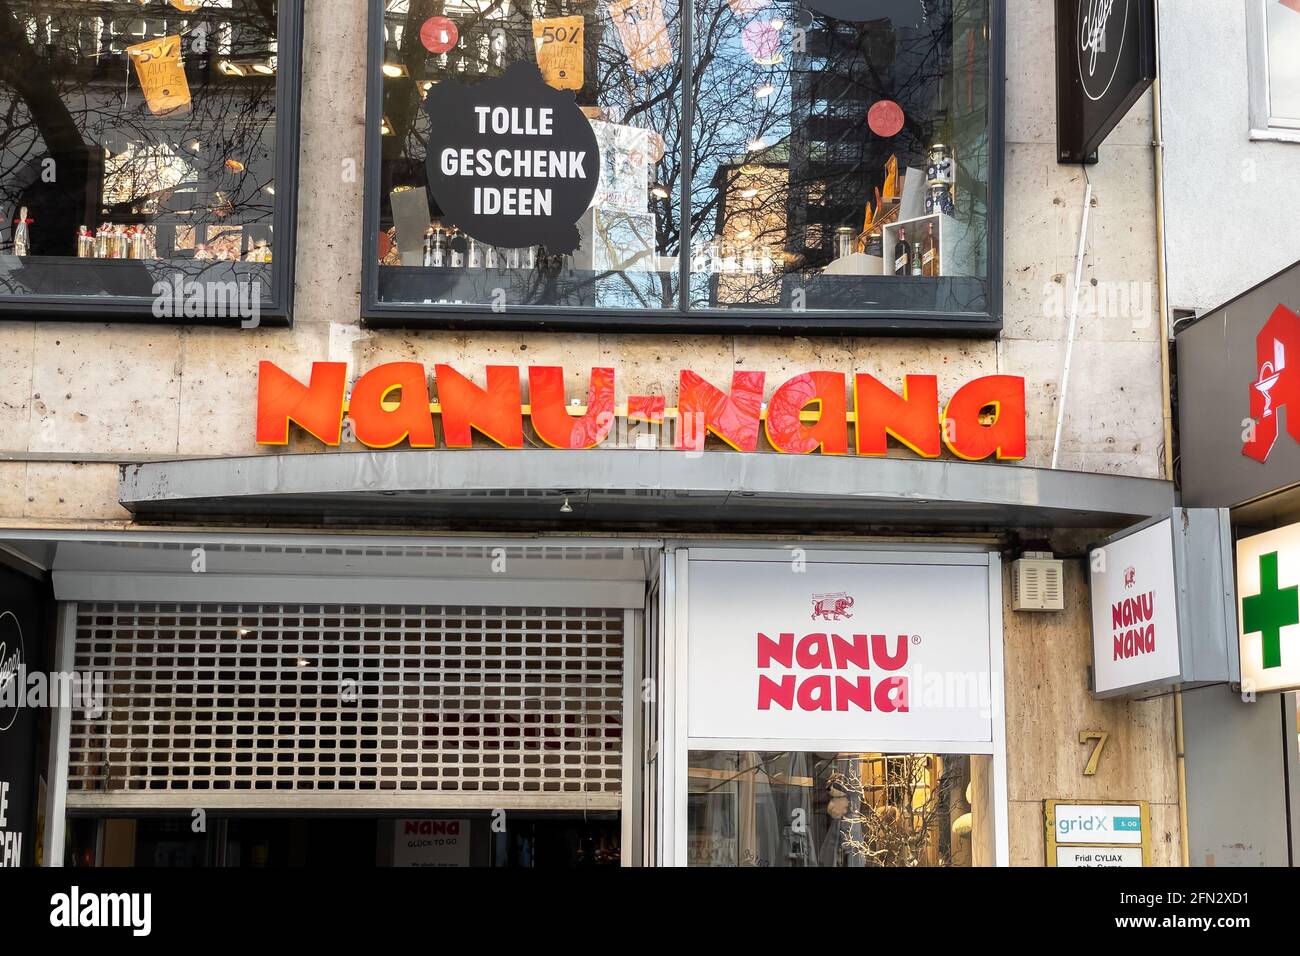 Nanu - Nana store sign in Munich Stock Photo